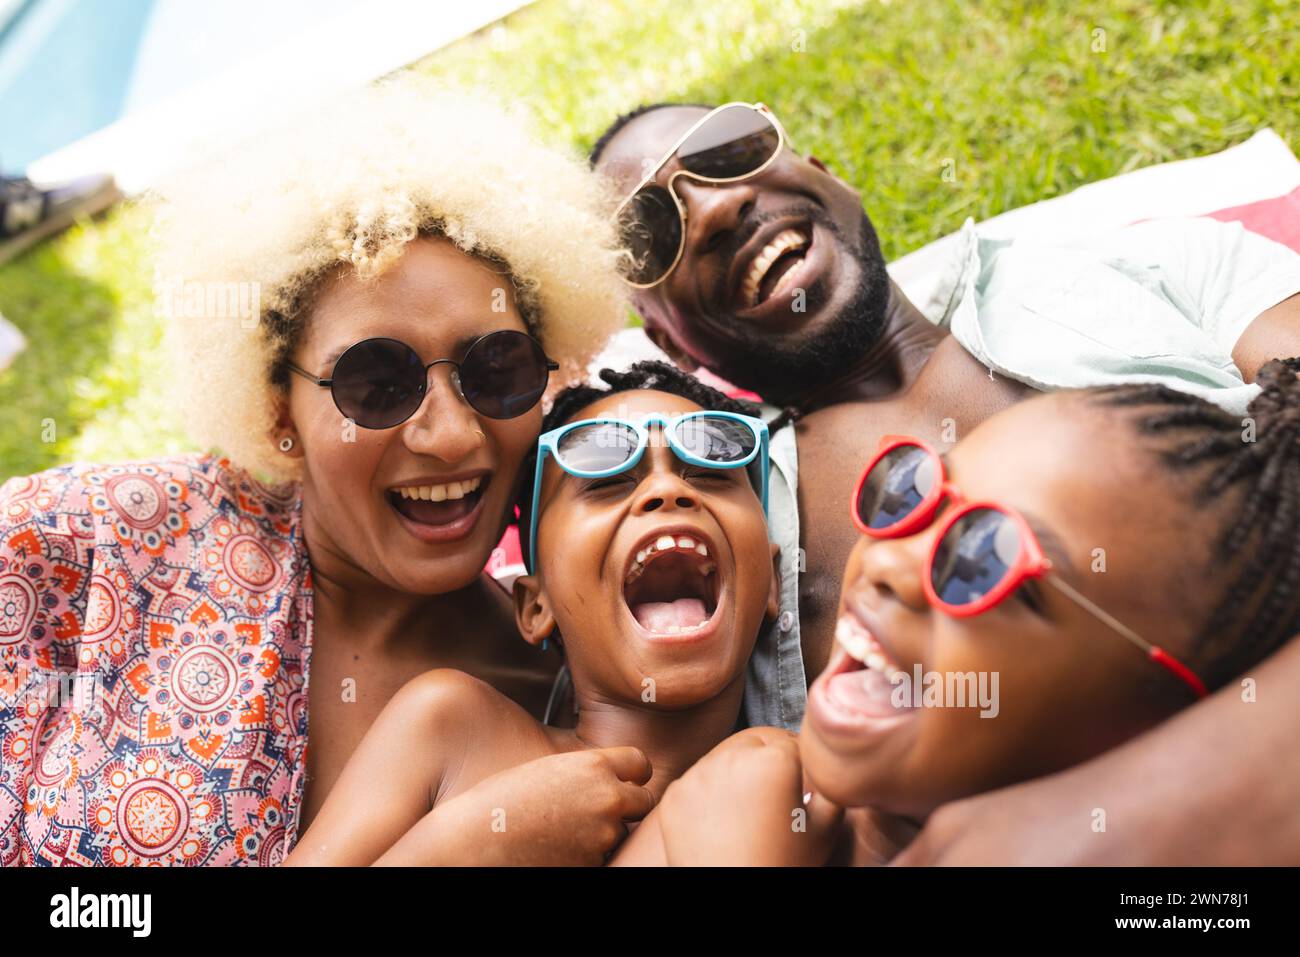 Eine vierköpfige Familie teilt sich einen sonnigen Selfie-Moment im Freien. Stockfoto